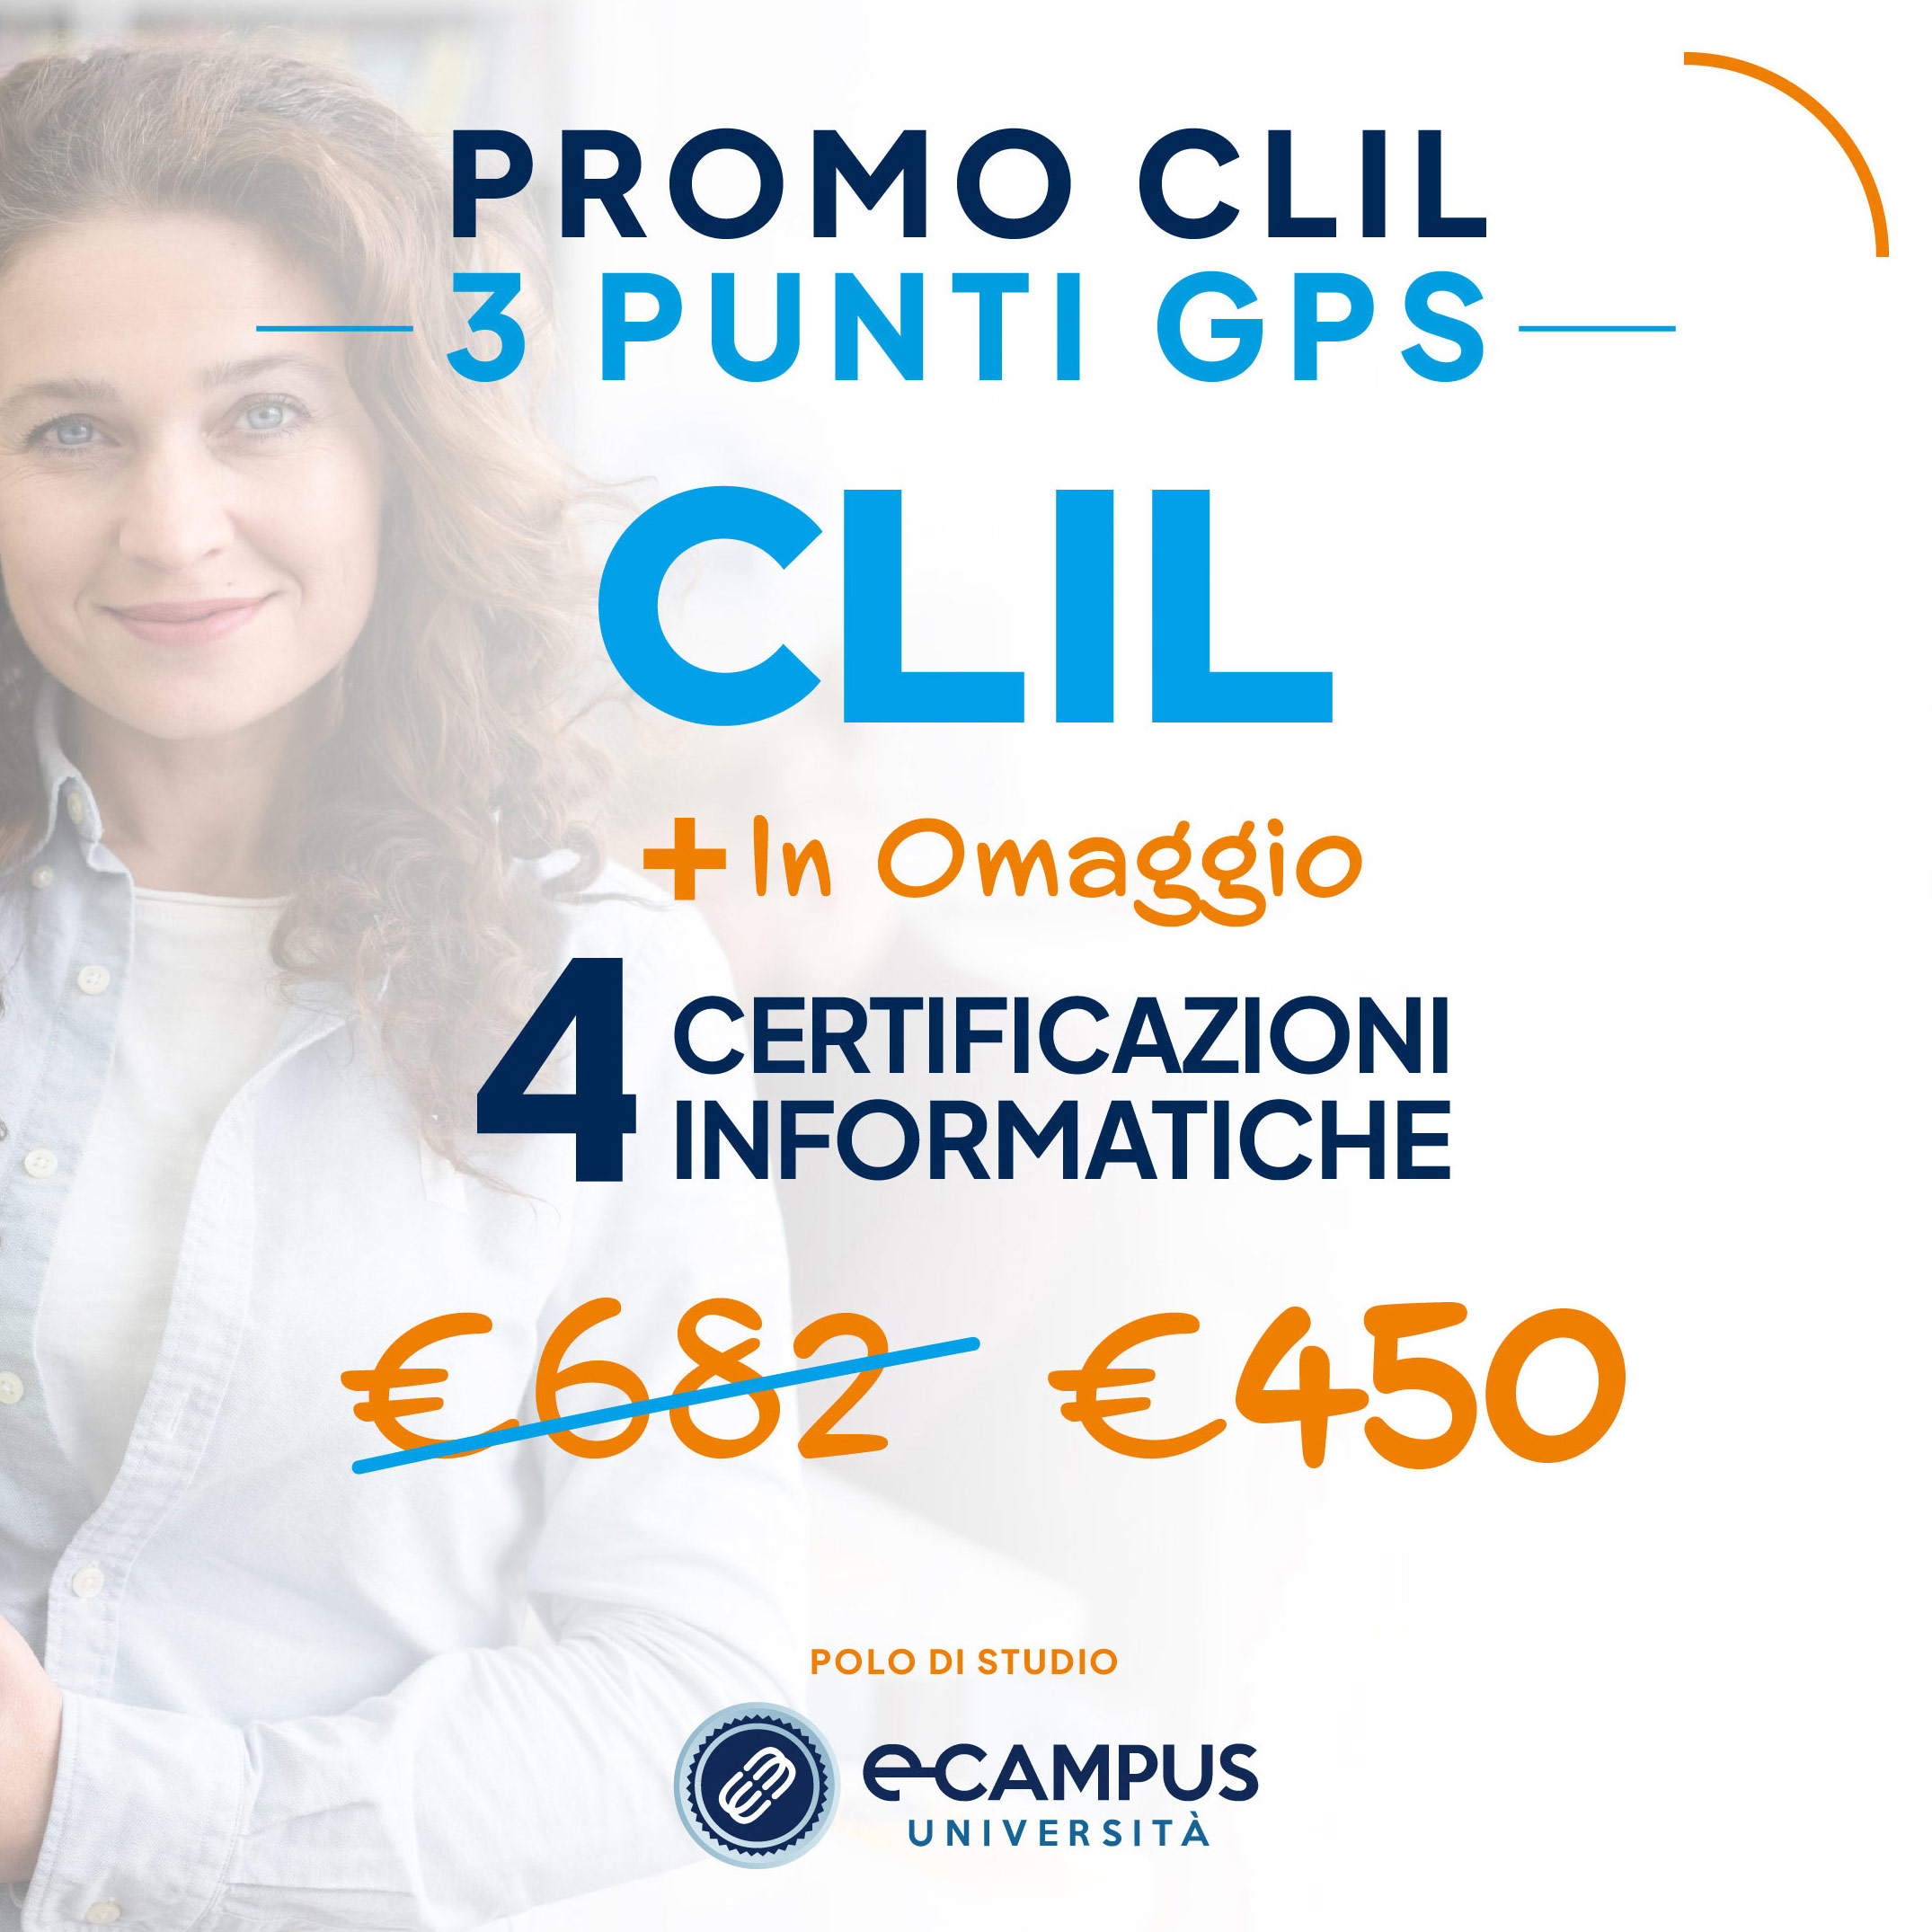 PROMO CLIL 3 Punti GPS - 4 Certificazioni Informatiche in Omaggio